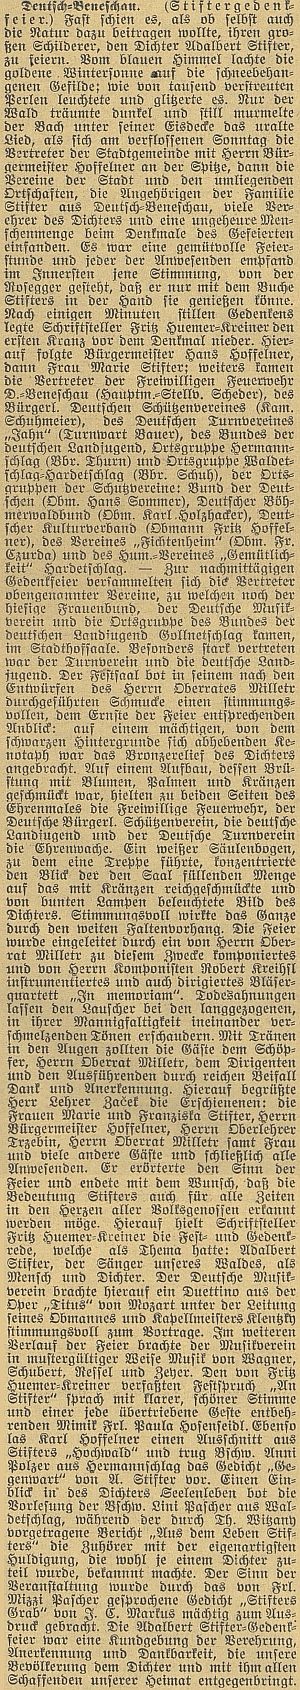 Obsáhlý článek českobudějovického německého listu o této slavnosti, konané v lednu roku 1938 mj. za účasti Marie a Franzisky Stifterových